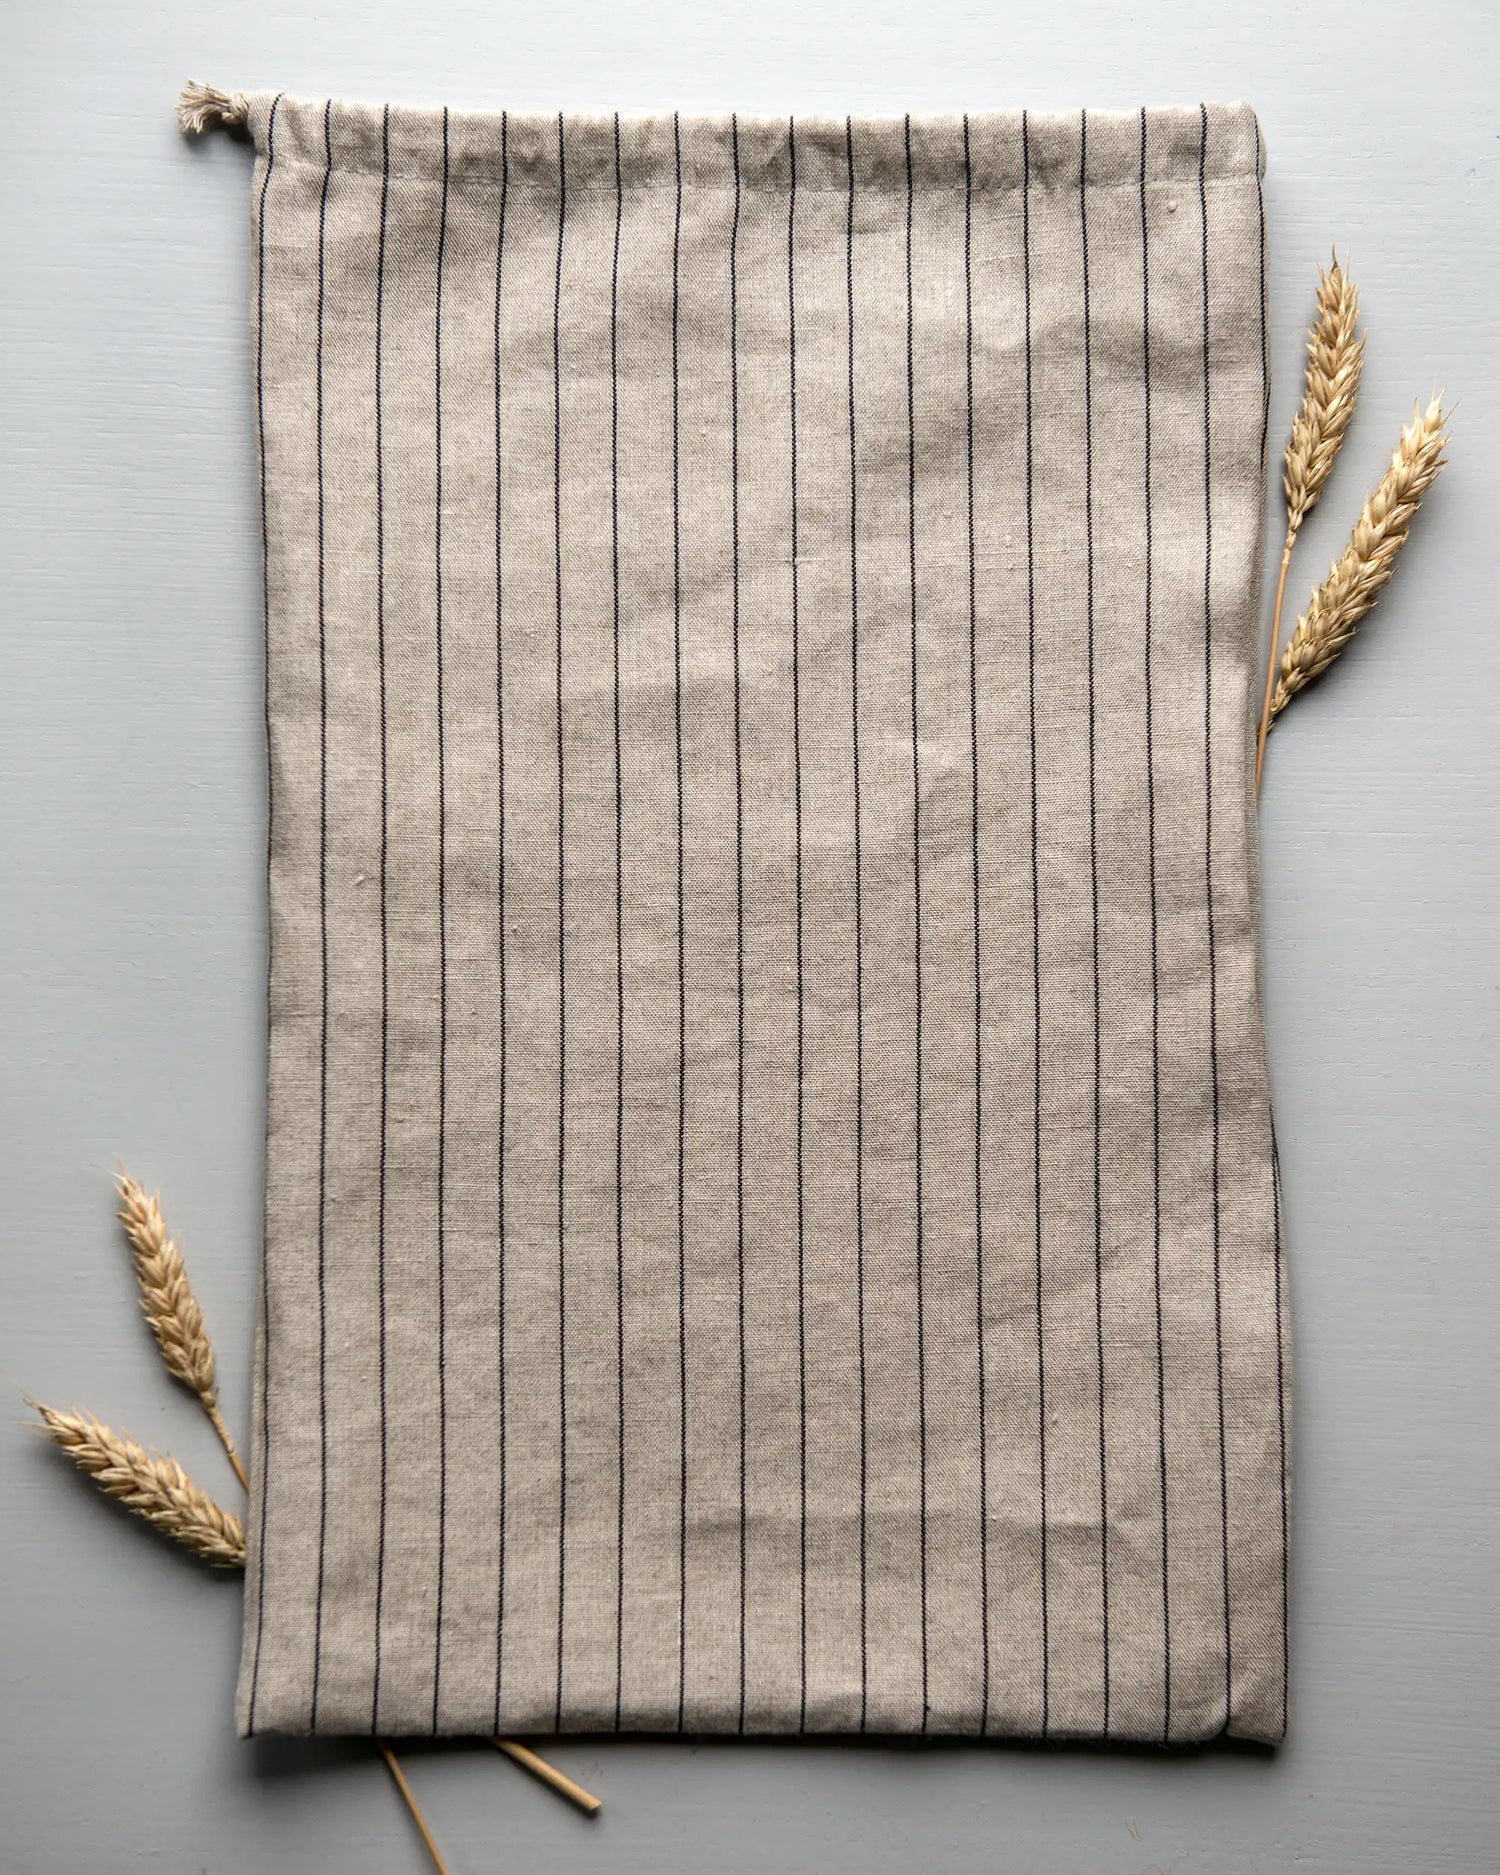 En handsydd brödpåse i randigt linnetyg som ligger på en yta tillsammans med torkat vete. 